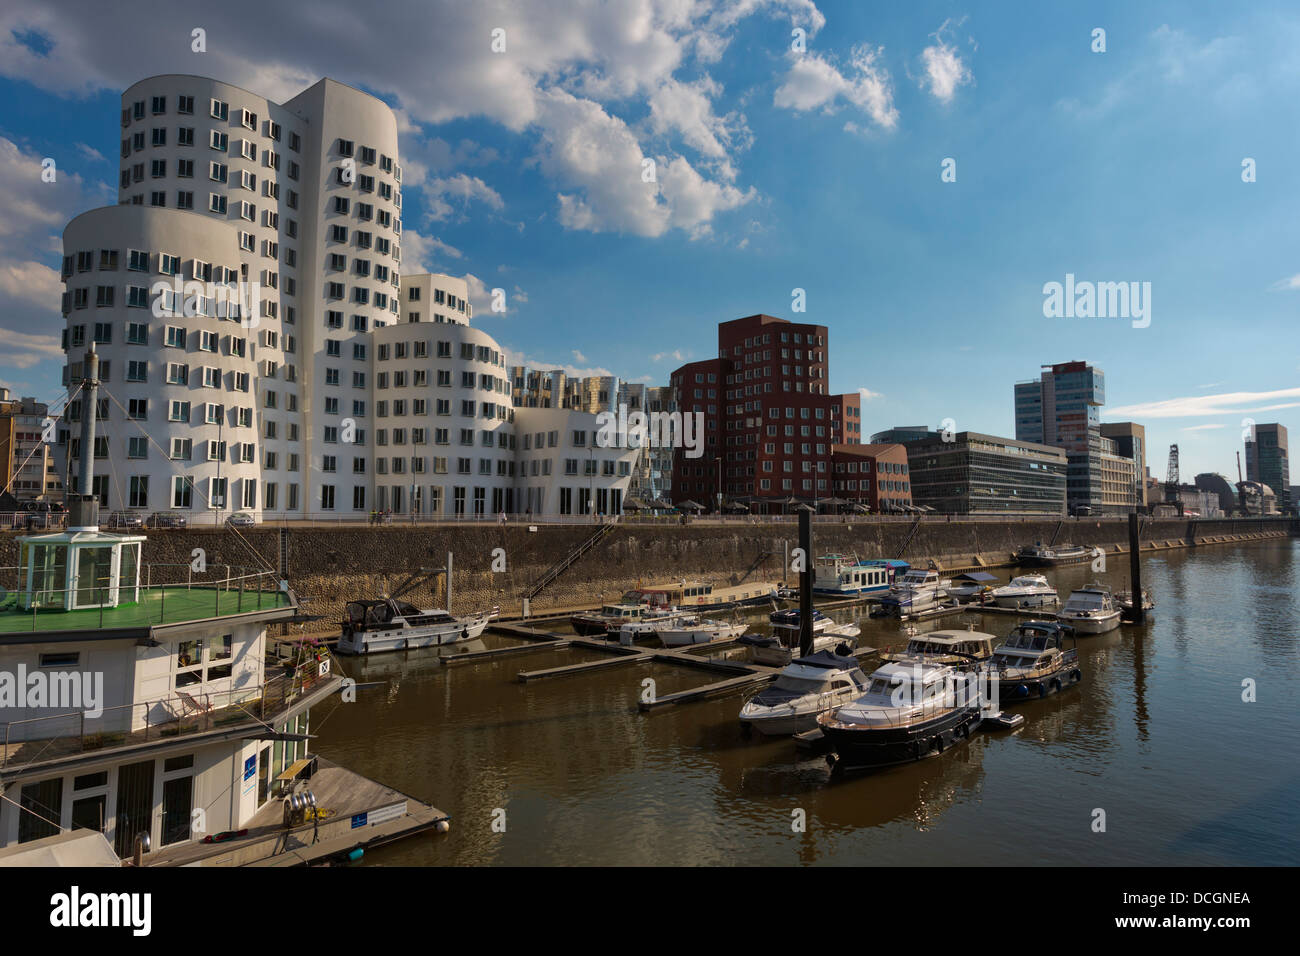 Il 'Dancing edifici" di Frank Gehry o a Medienhafen con la Marina di Düsseldorf Foto Stock